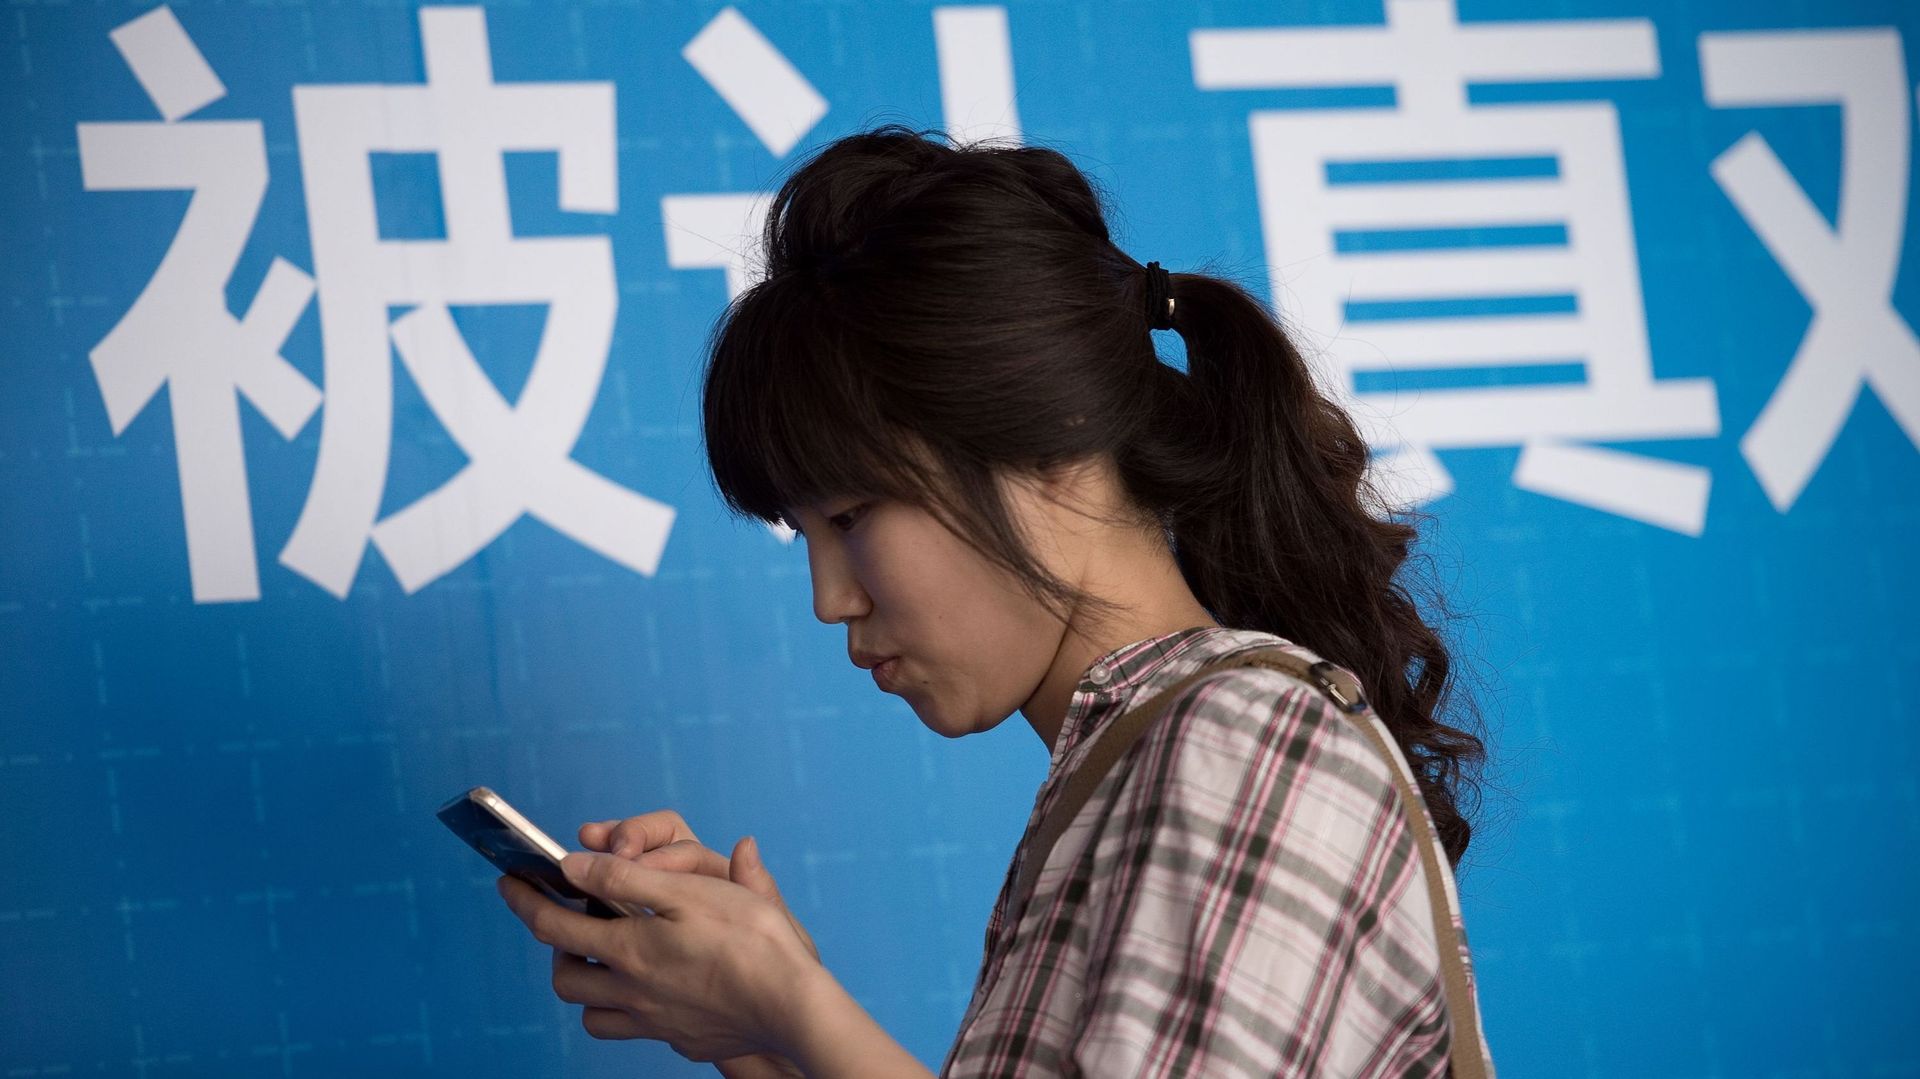 Le chinois, deuxième langue du Web en nombre d’utilisateurs ne compte que 2% du contenu. 